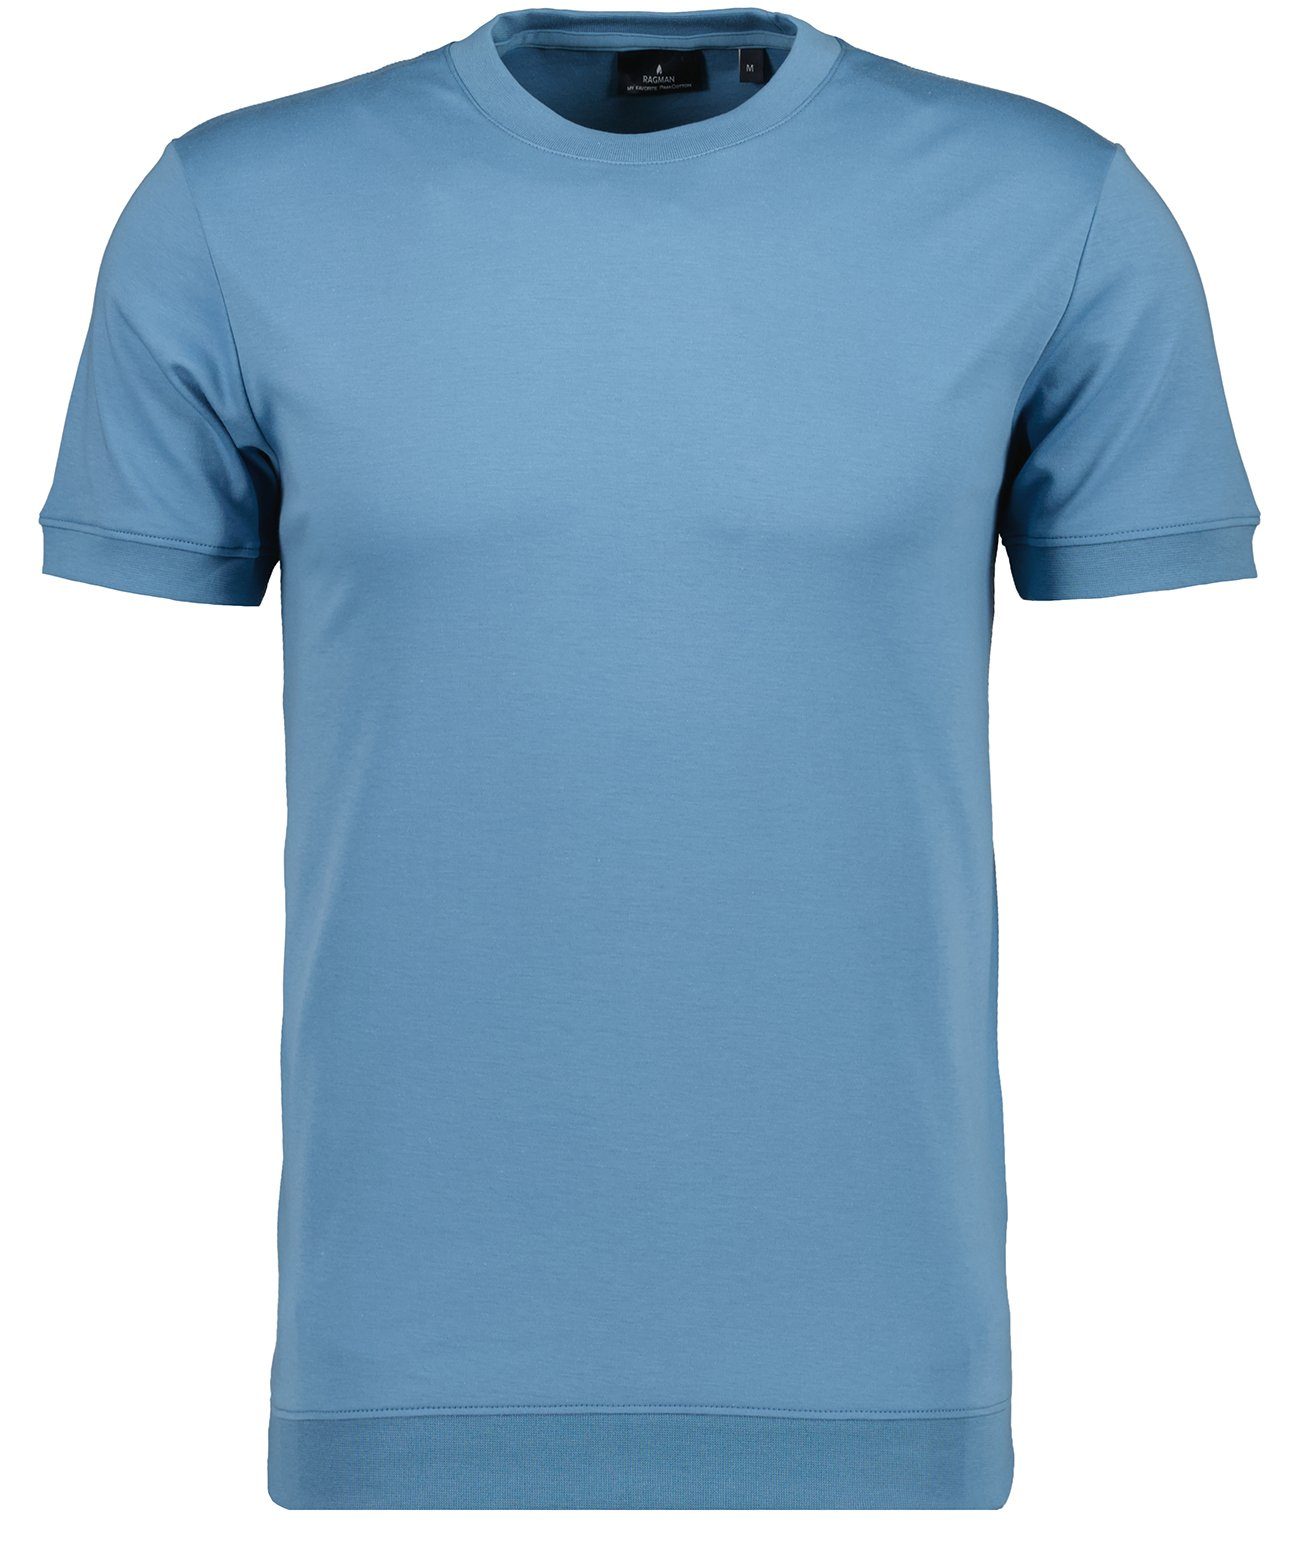 Beliebte Neuheiten sind online zu RAGMAN T-Shirt Blau-716